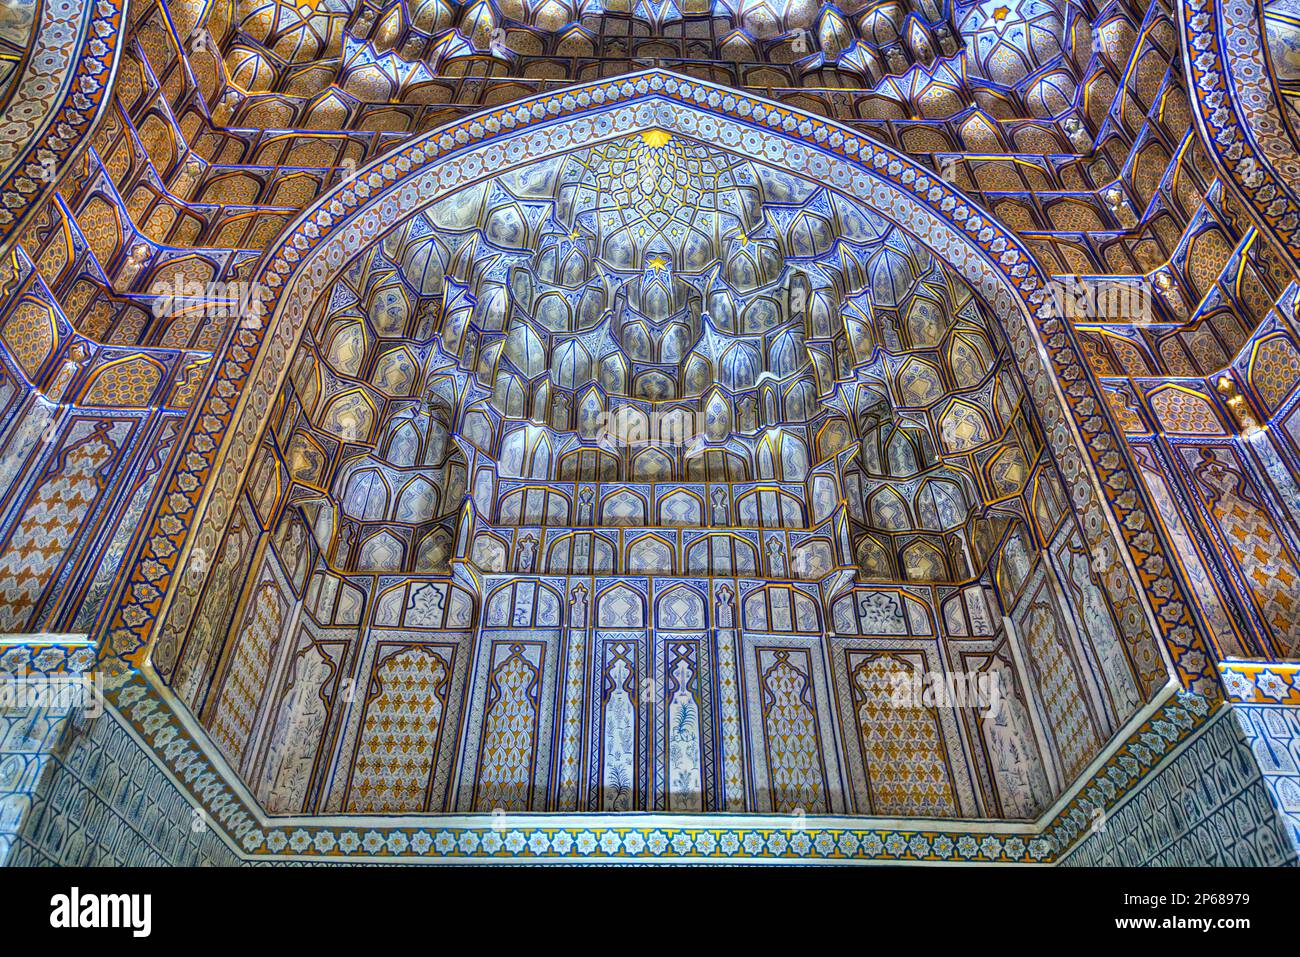 Soffitto interno, mausoleo di Tuman Oko, Shah-i-Zinda, patrimonio dell'umanità dell'UNESCO, Samarcanda, Uzbekistan, Asia centrale, Asia Foto Stock